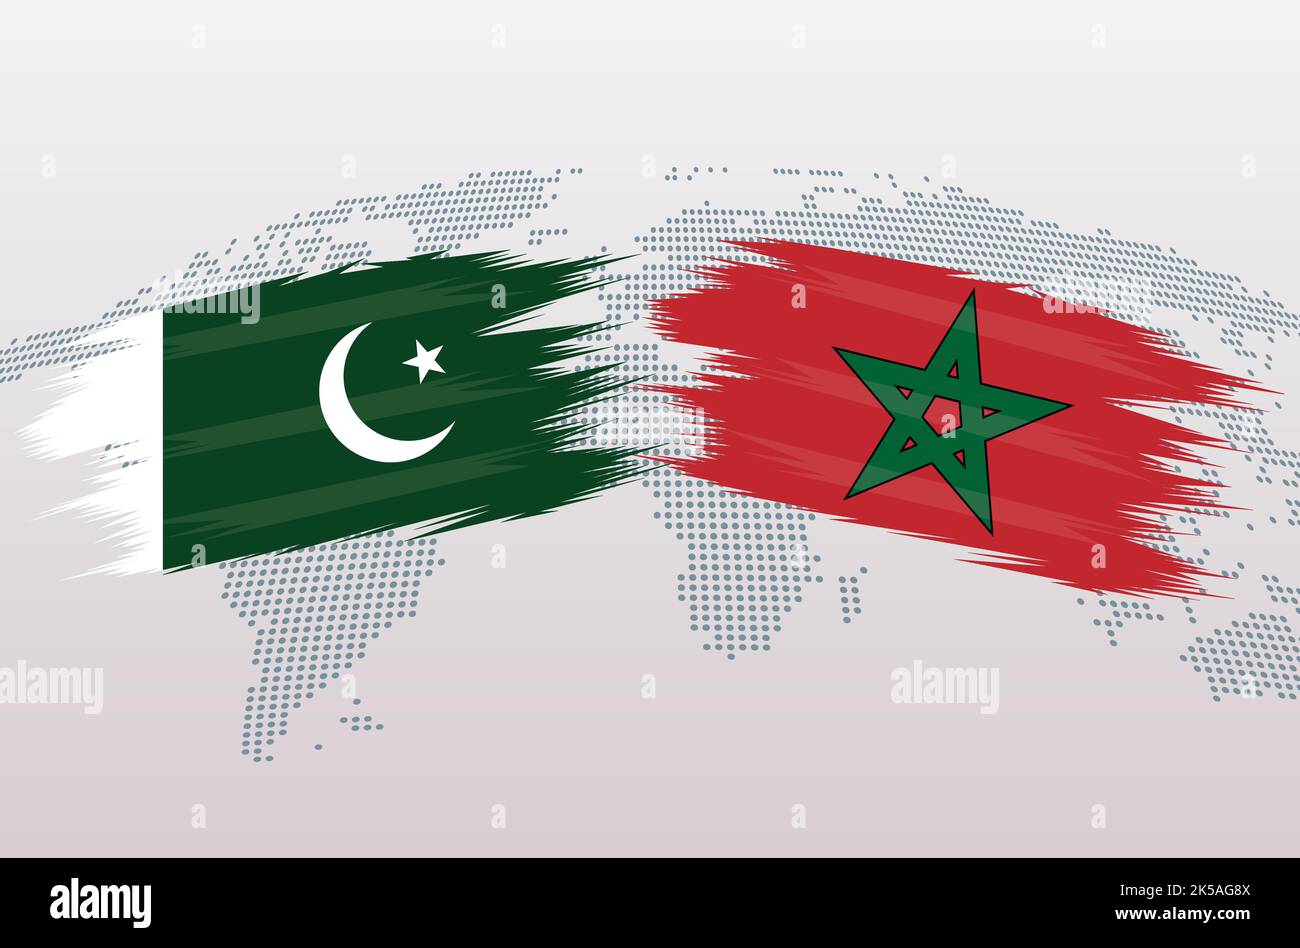 Bandiere Pakistan vs Marocco. Bandiere della Repubblica islamica del Pakistan contro Marocco, isolate su sfondo grigio della mappa del mondo. Illustrazione vettoriale. Illustrazione Vettoriale